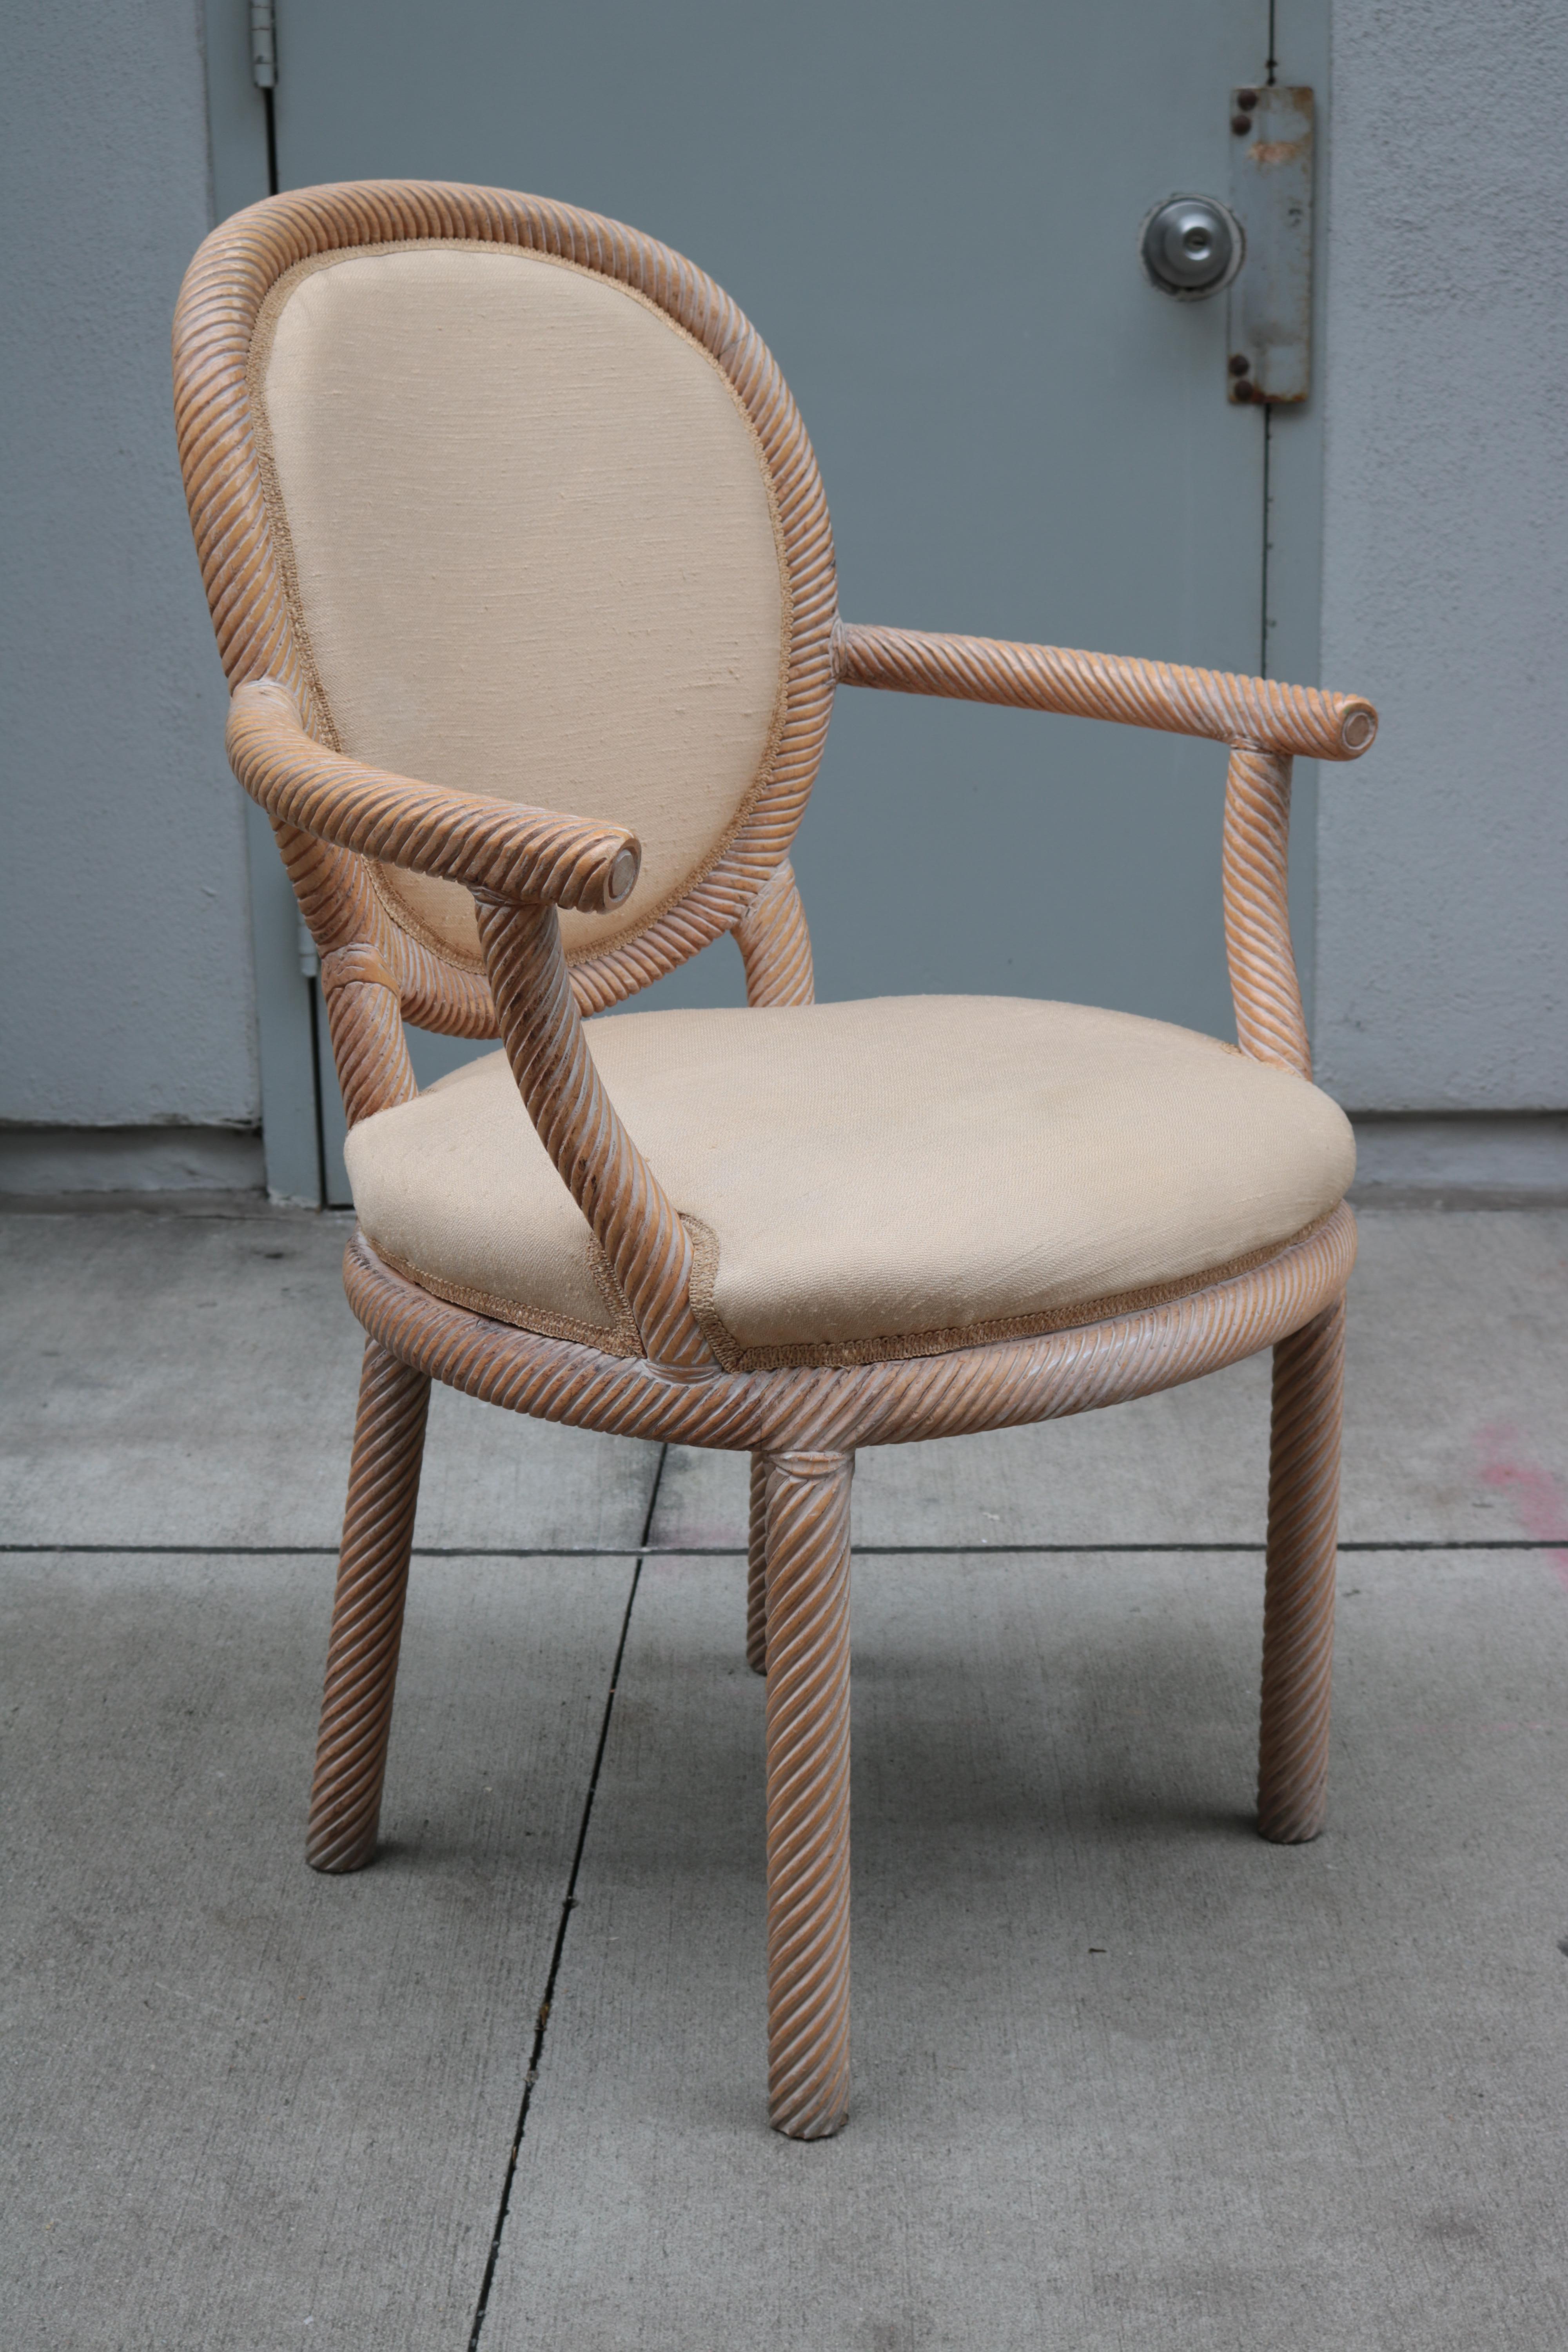 Paire de fauteuils sculptés par Arpex.
Détails en bois sculpté.